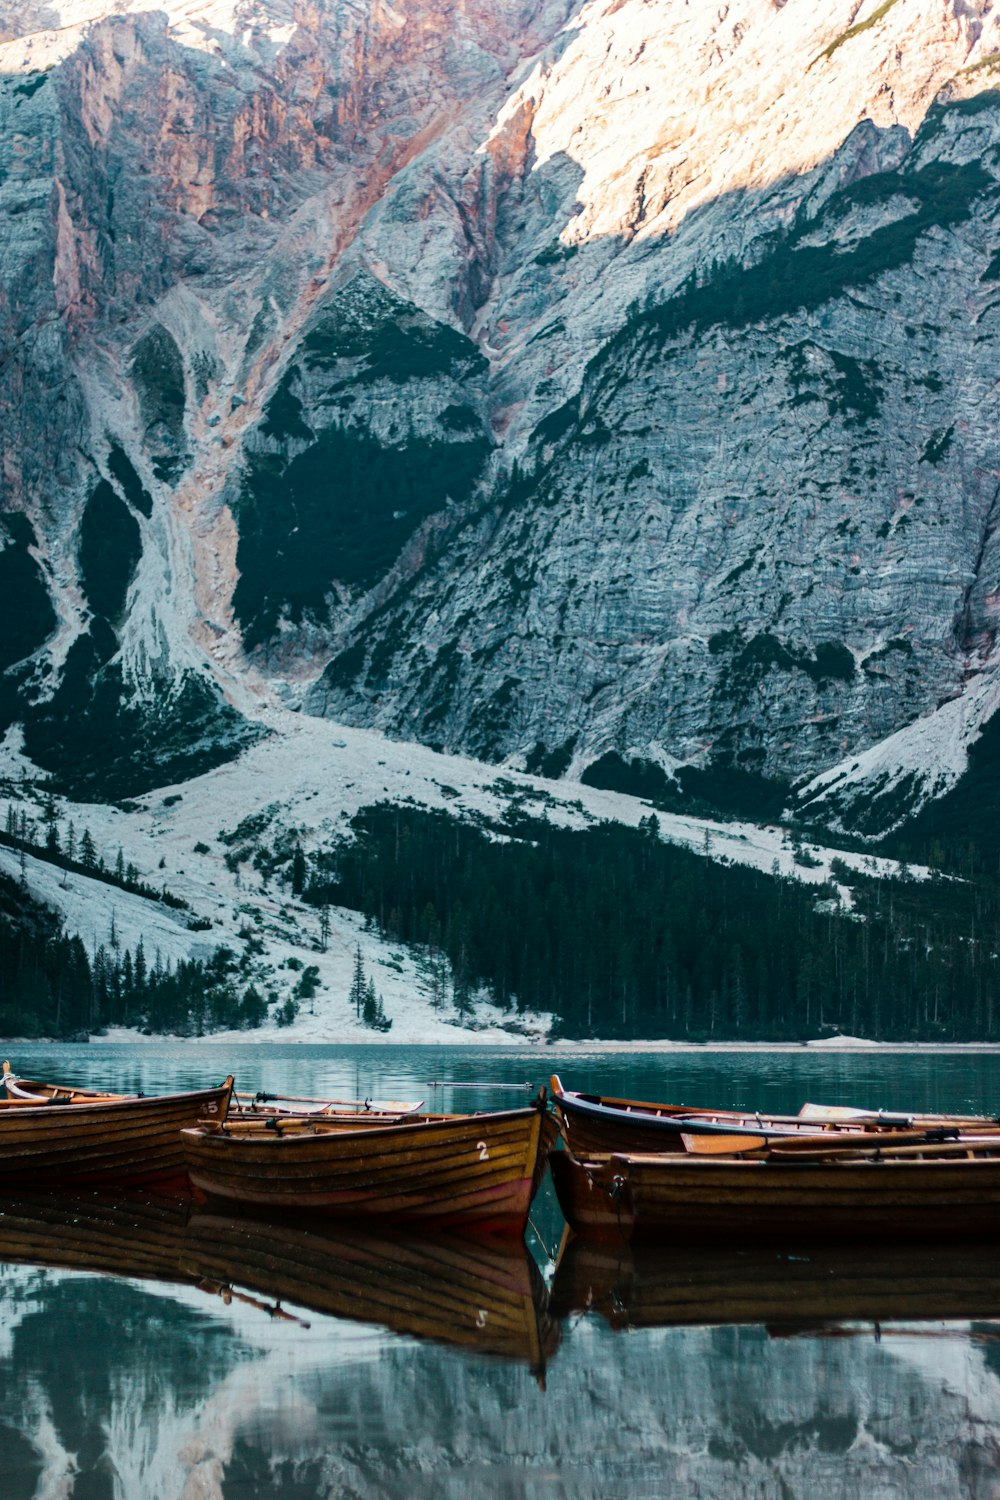 Un gruppo di barche in uno specchio d'acqua da una montagna rocciosa